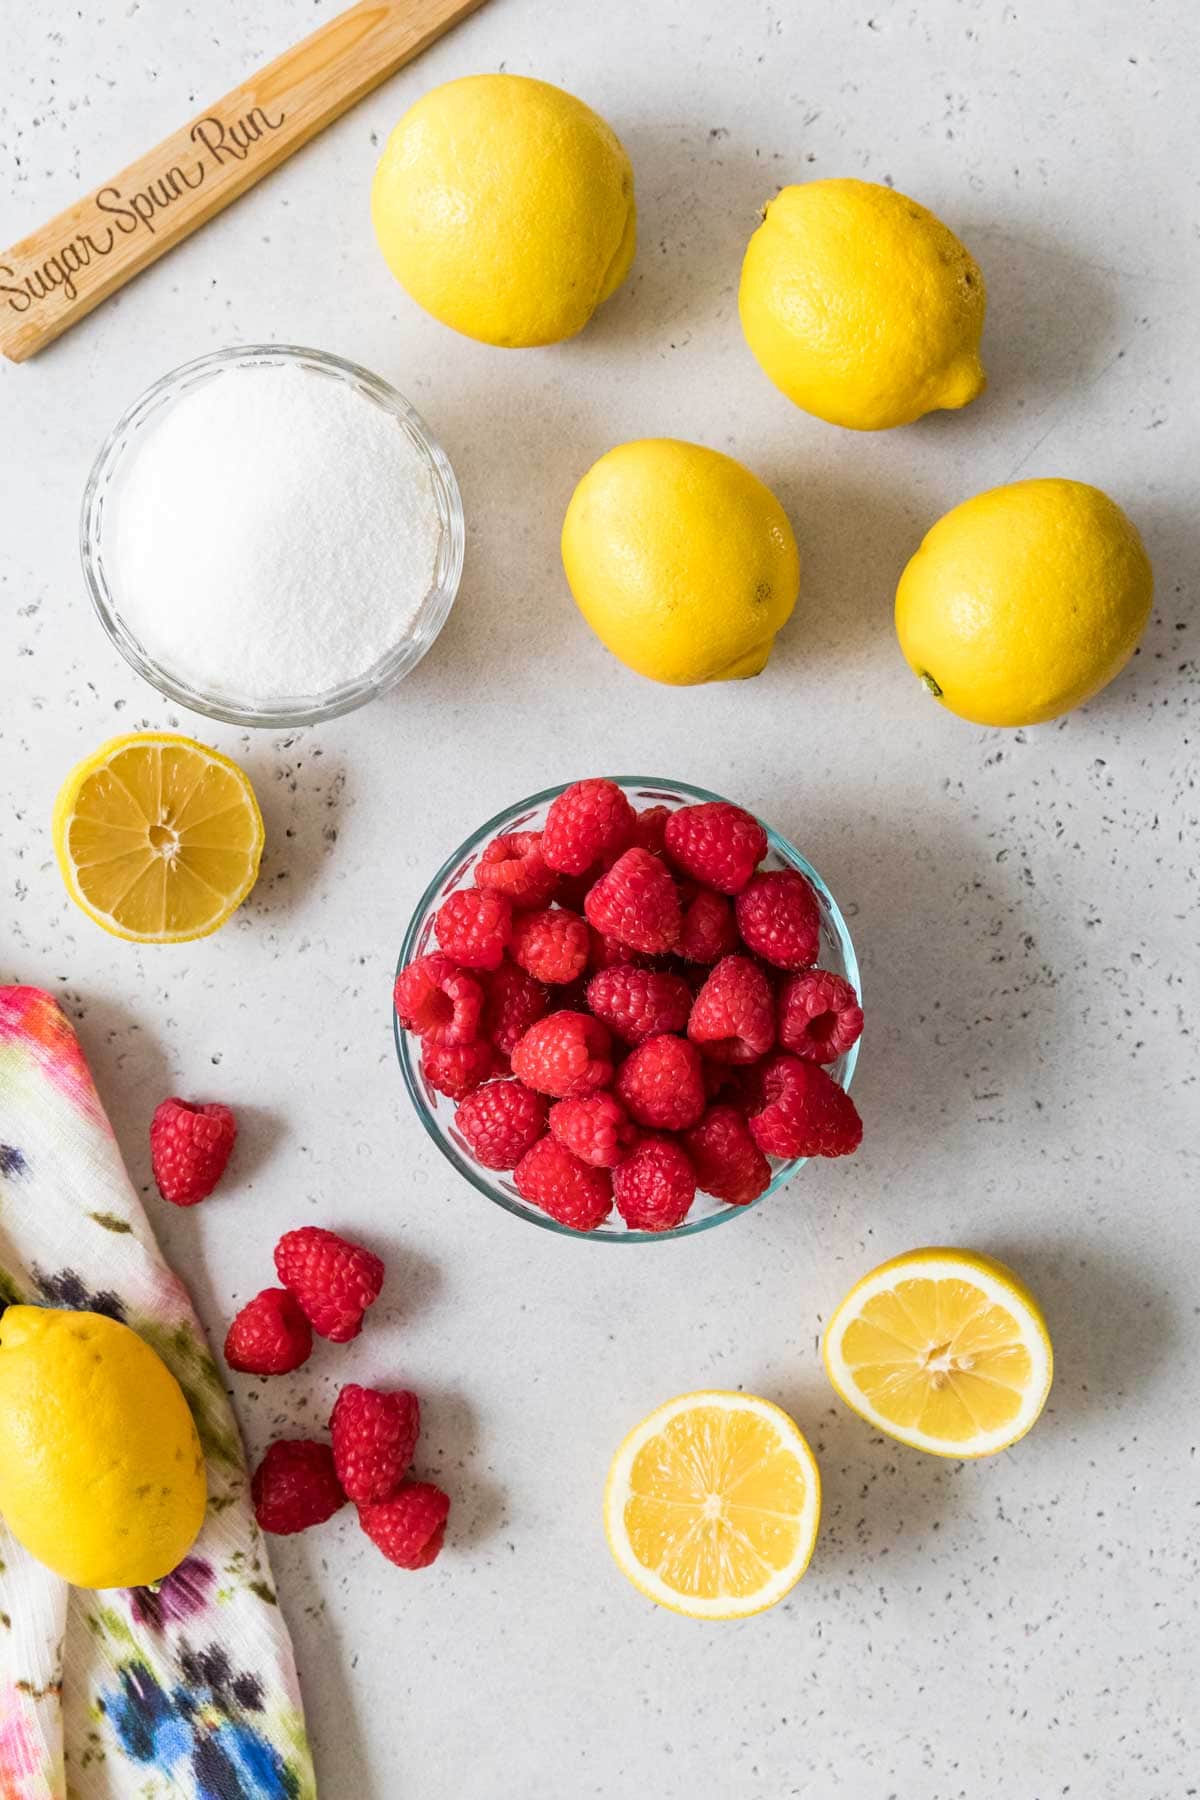 Overhead view of ingredients including lemons, raspberries, and sugar.